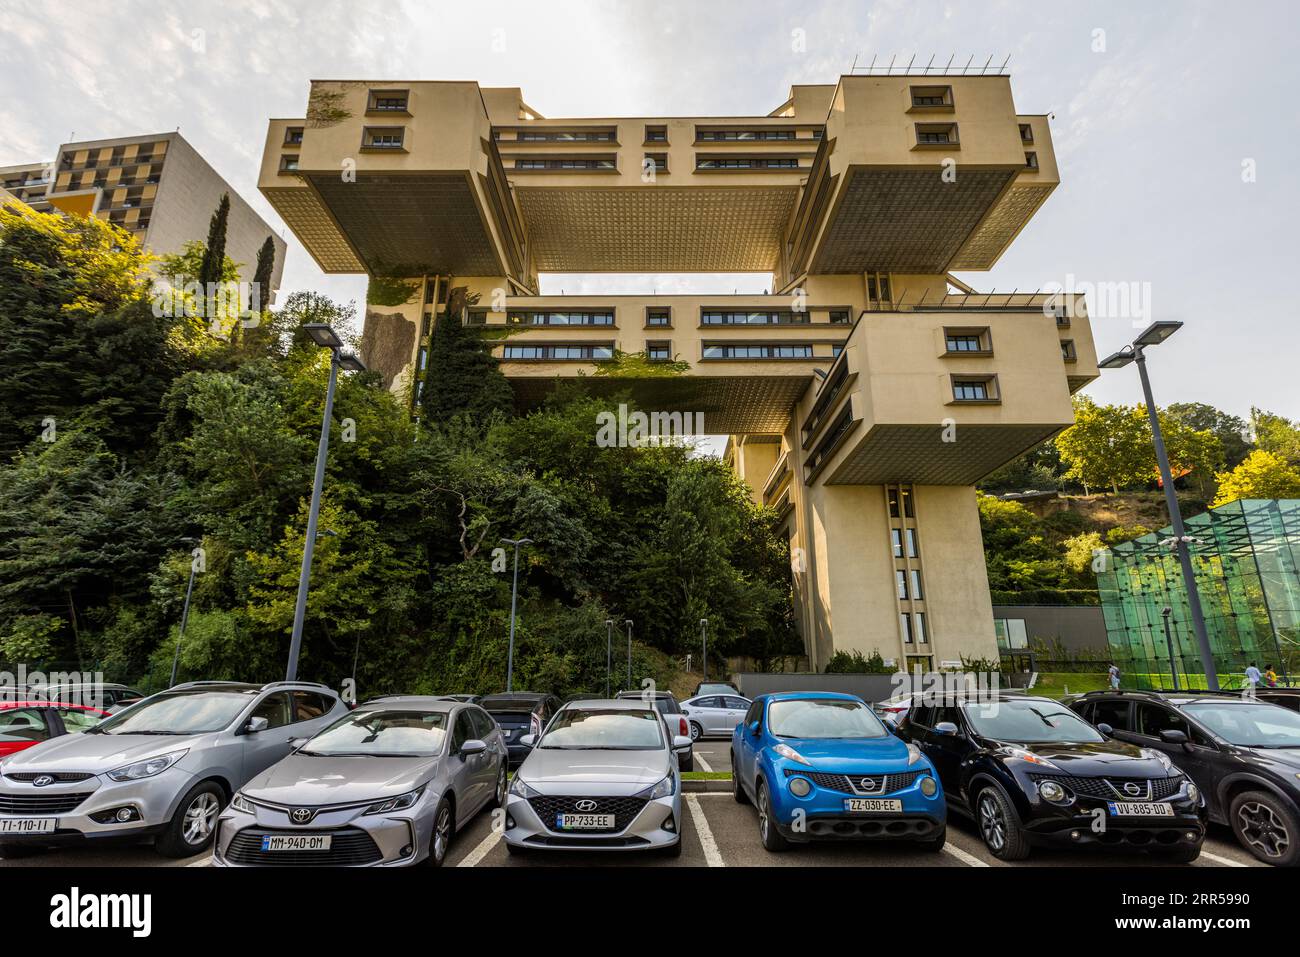 L'ancien bâtiment administratif du ministère de la construction routière à Tbilissi est l'un des bâtiments les plus importants du modernisme socialiste en Géorgie. Après la reconstruction, il abrite aujourd'hui le siège de la Banque de Géorgie Banque D'Images